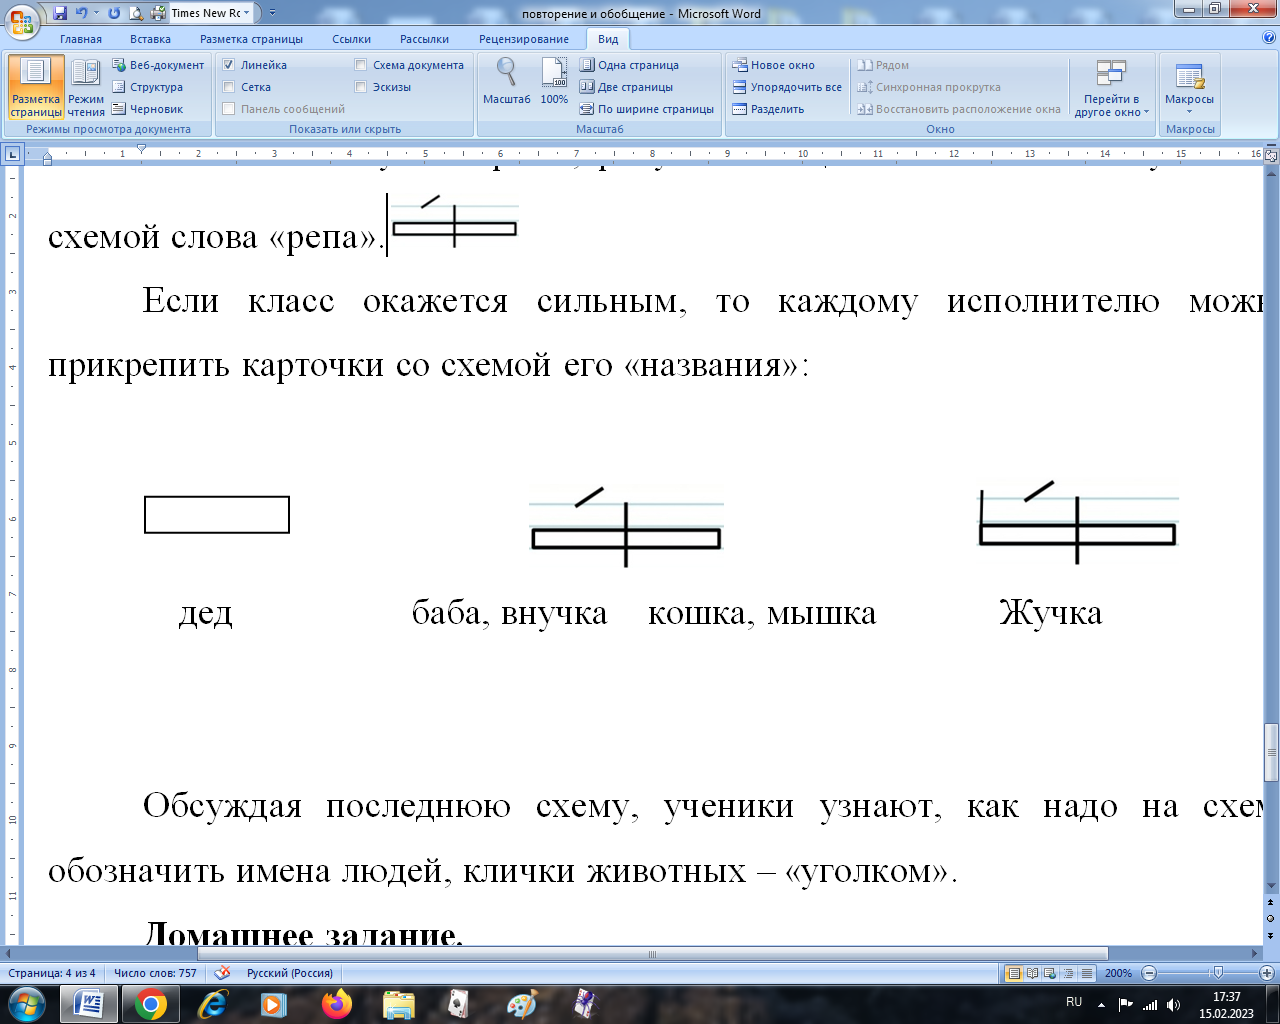 Вопросы для повторения 5 класс русский язык. Правила по русскому языку в таблицах и схемах 1-4 класс.